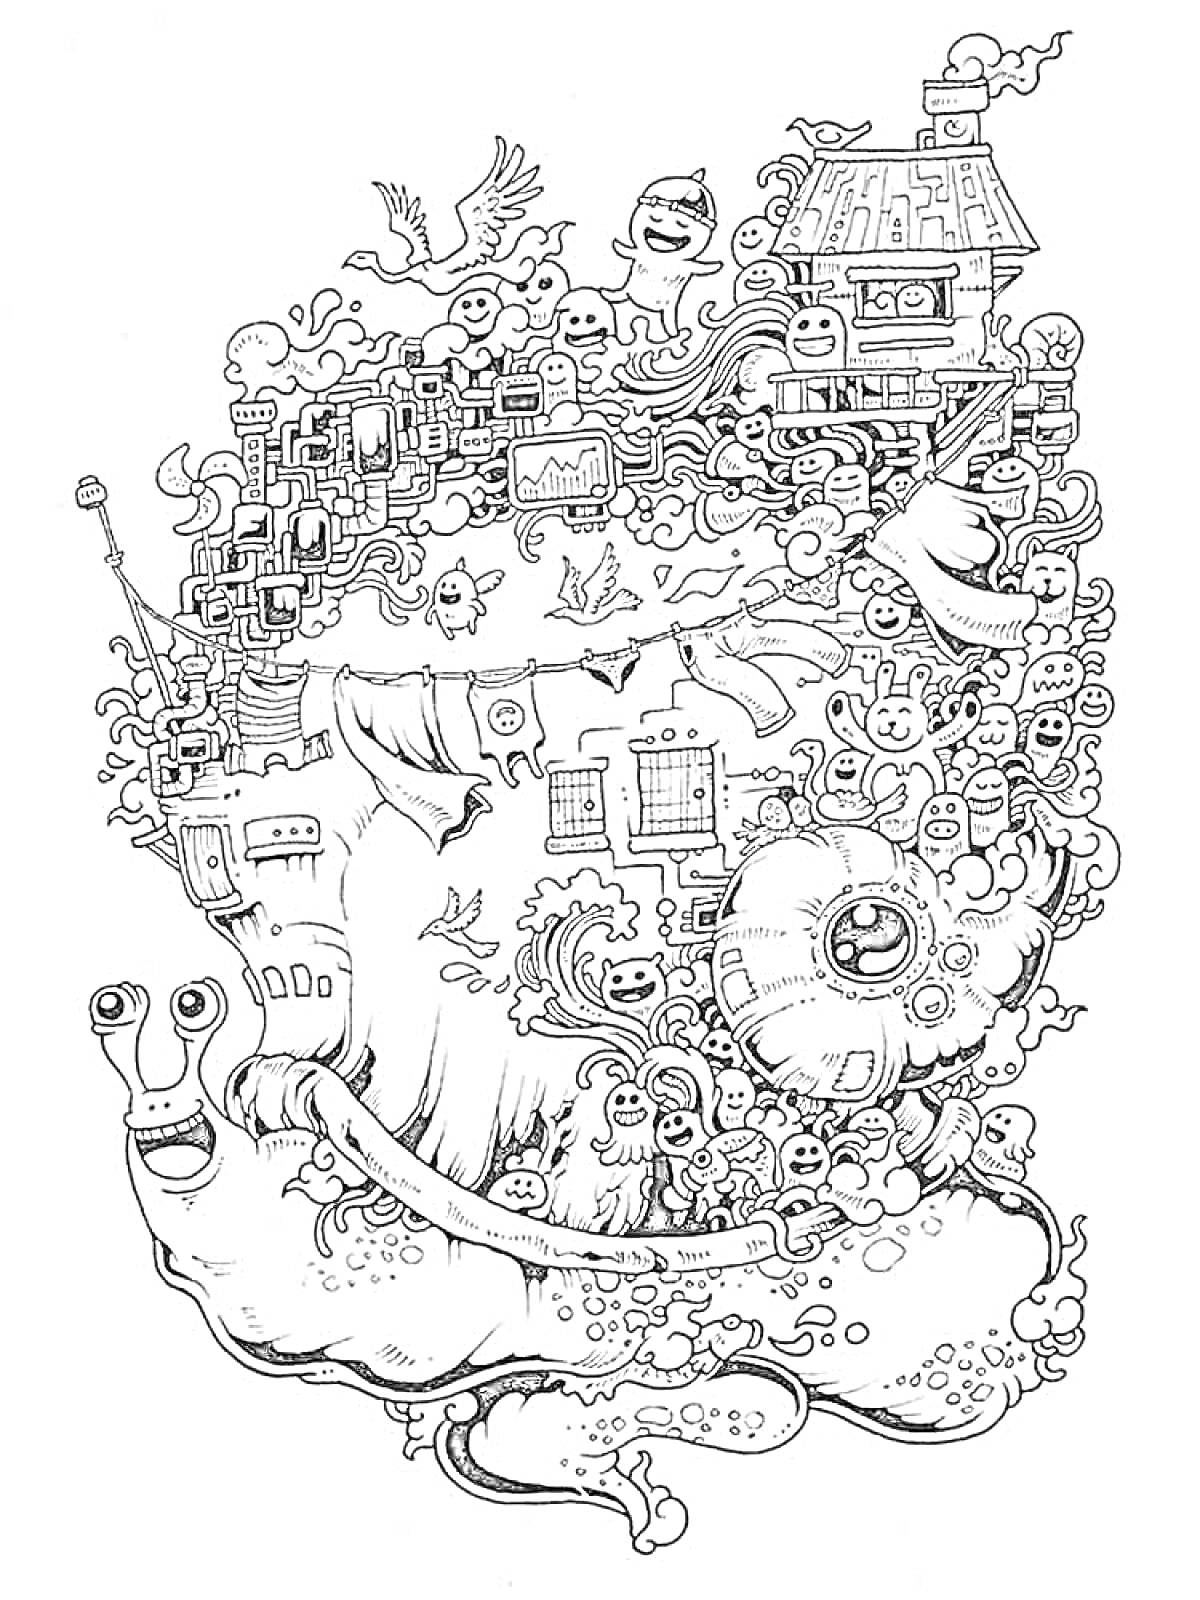 Раскраска Улитка с эклектичной массой мультяшных персонажей, зданий и объектов